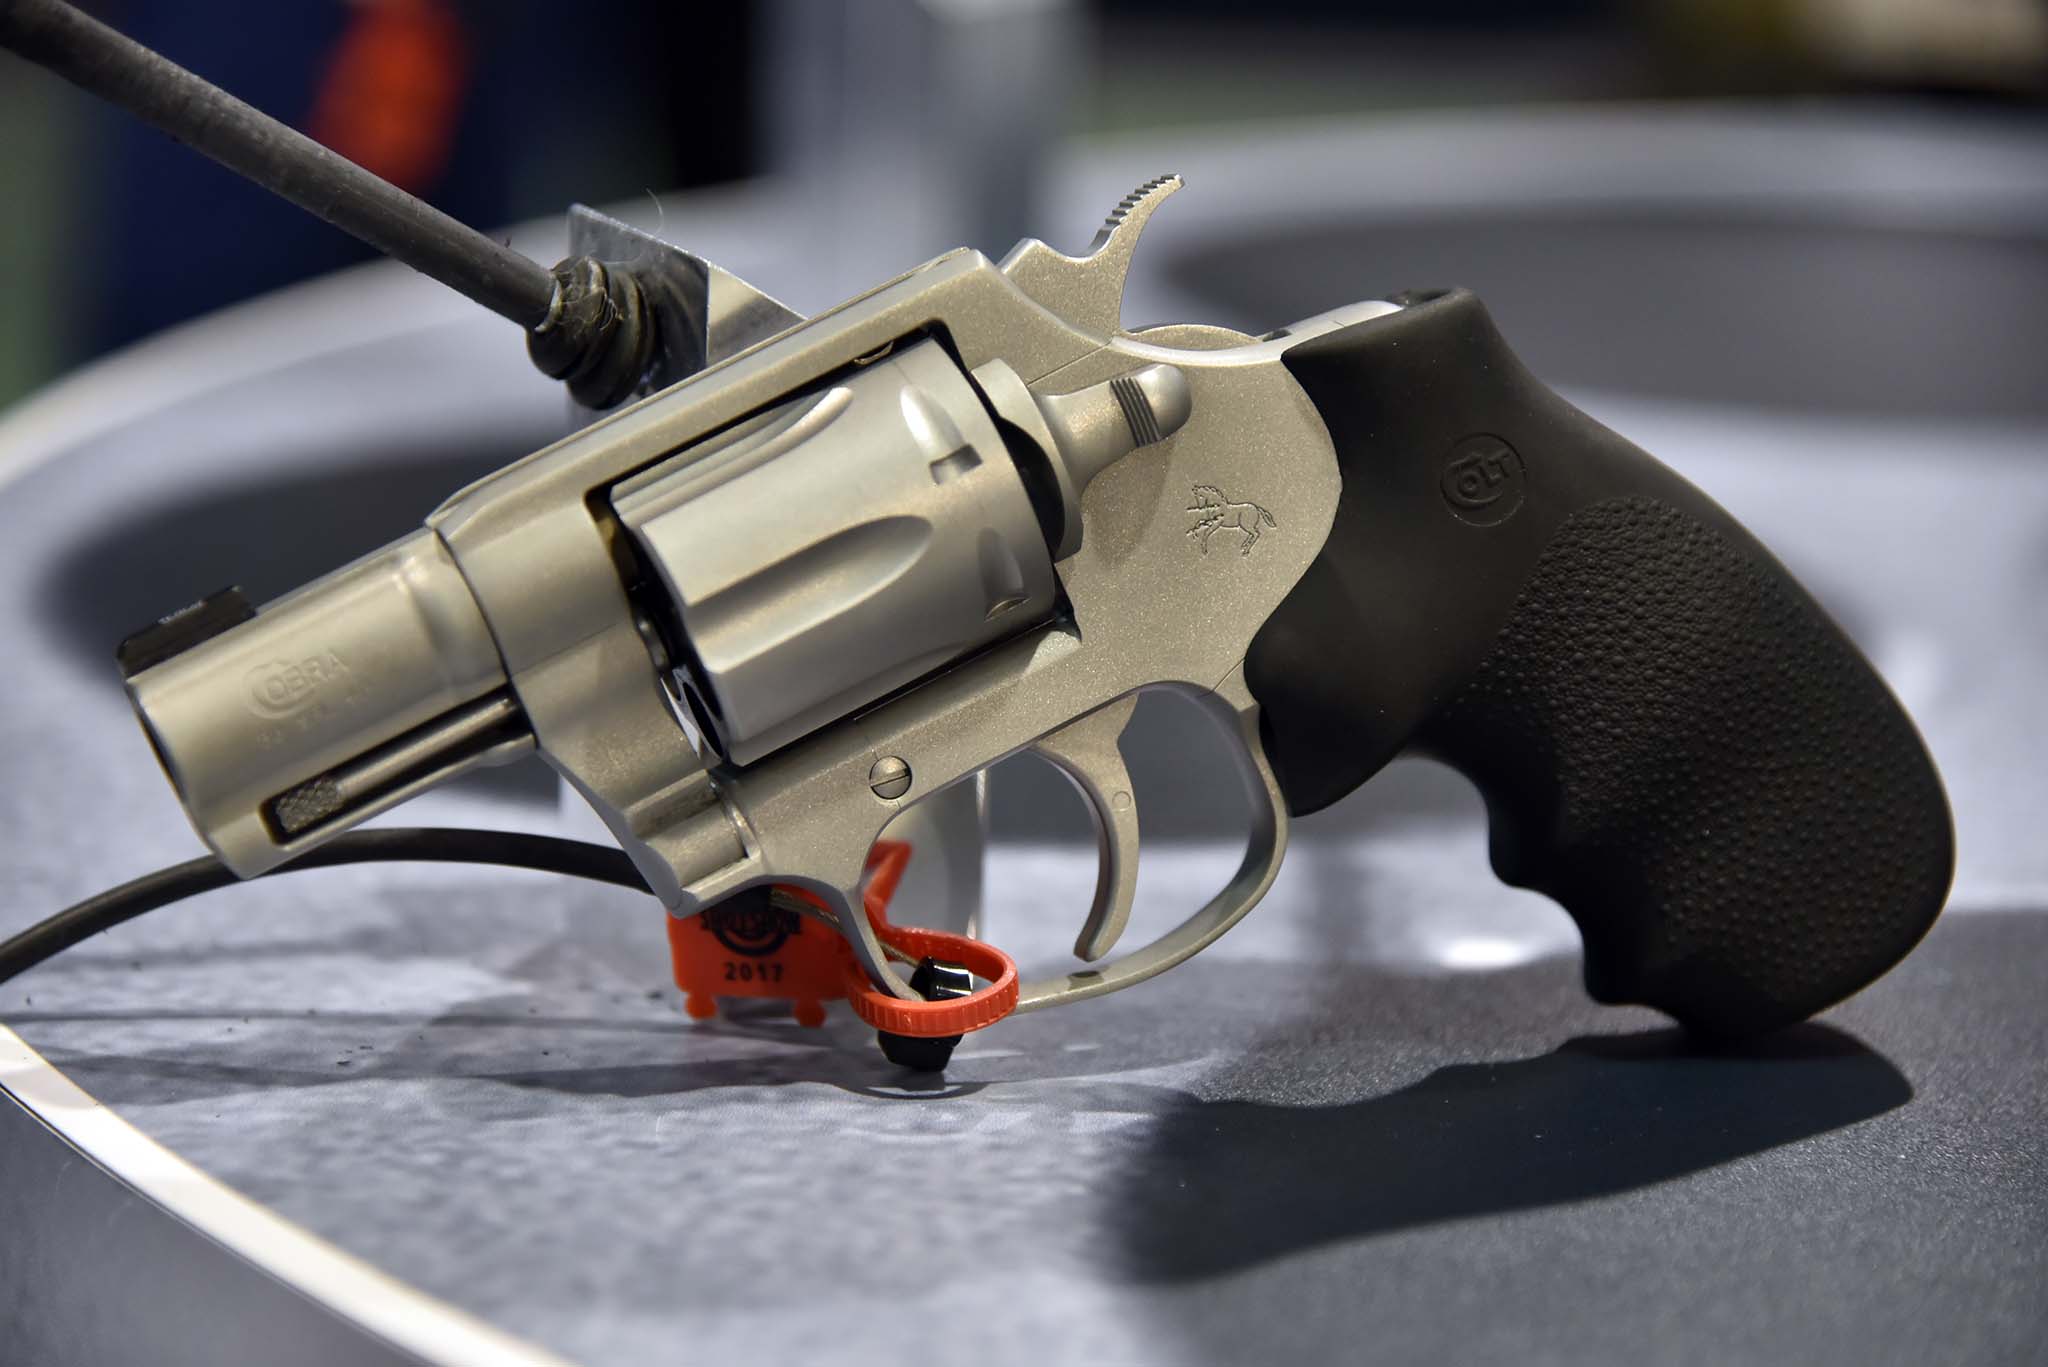 The new Colt Cobra revolver.